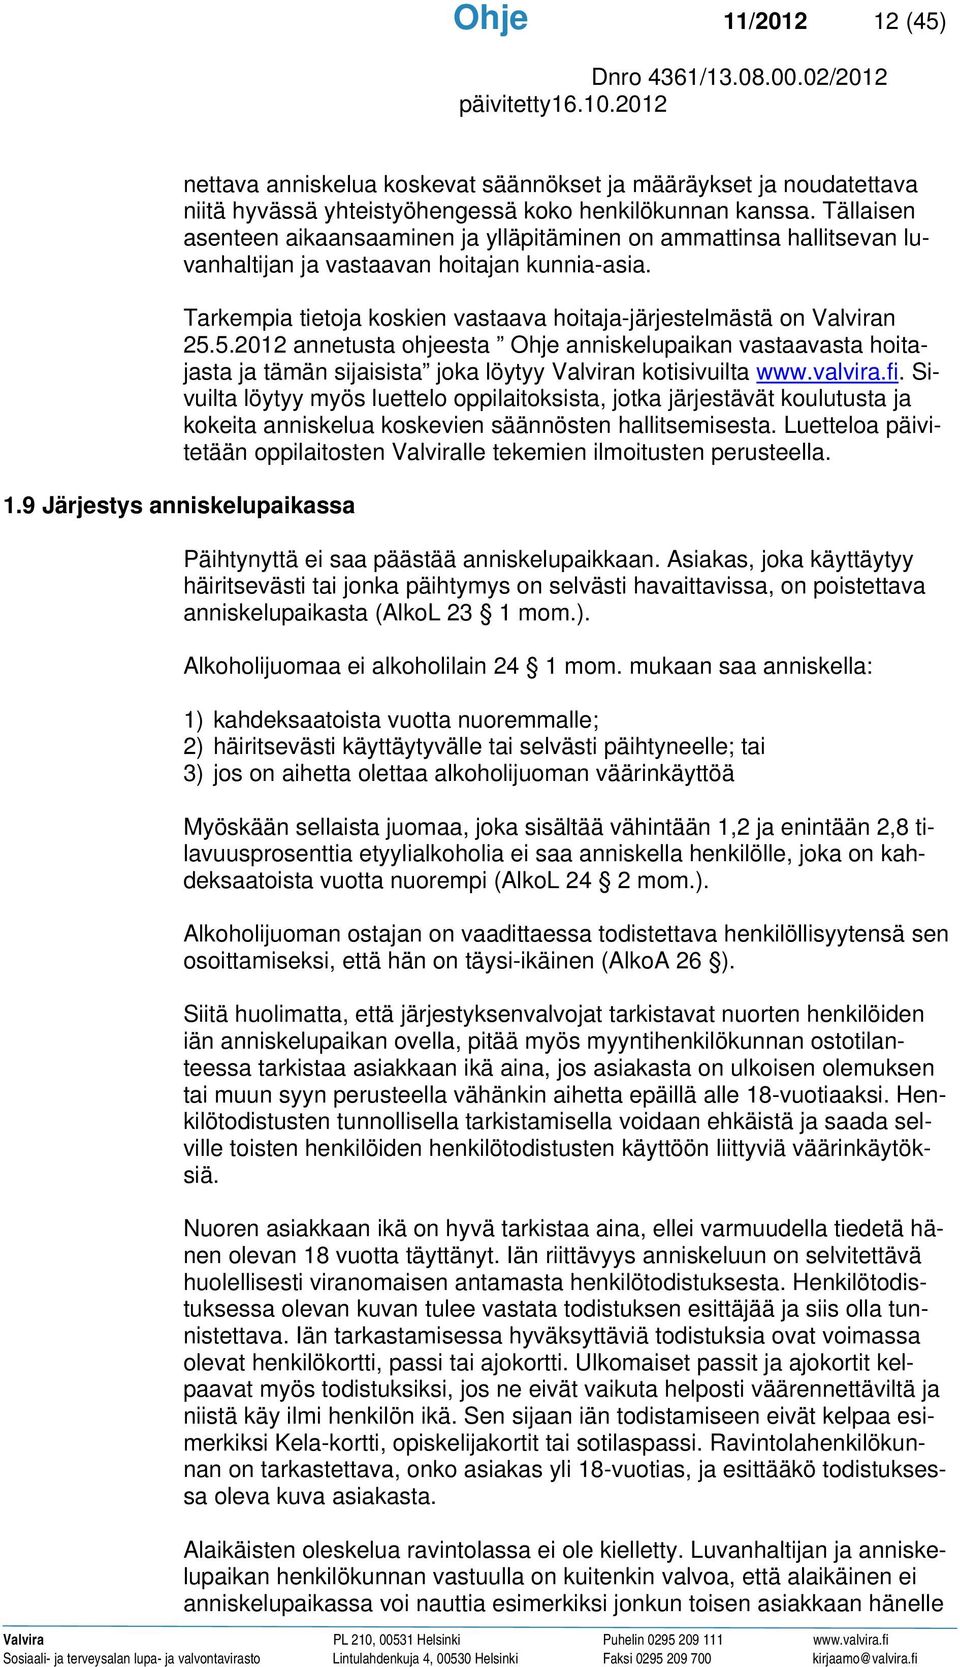 5.2012 annetusta ohjeesta Ohje anniskelupaikan vastaavasta hoitajasta ja tämän sijaisista joka löytyy Valviran kotisivuilta www.valvira.fi.